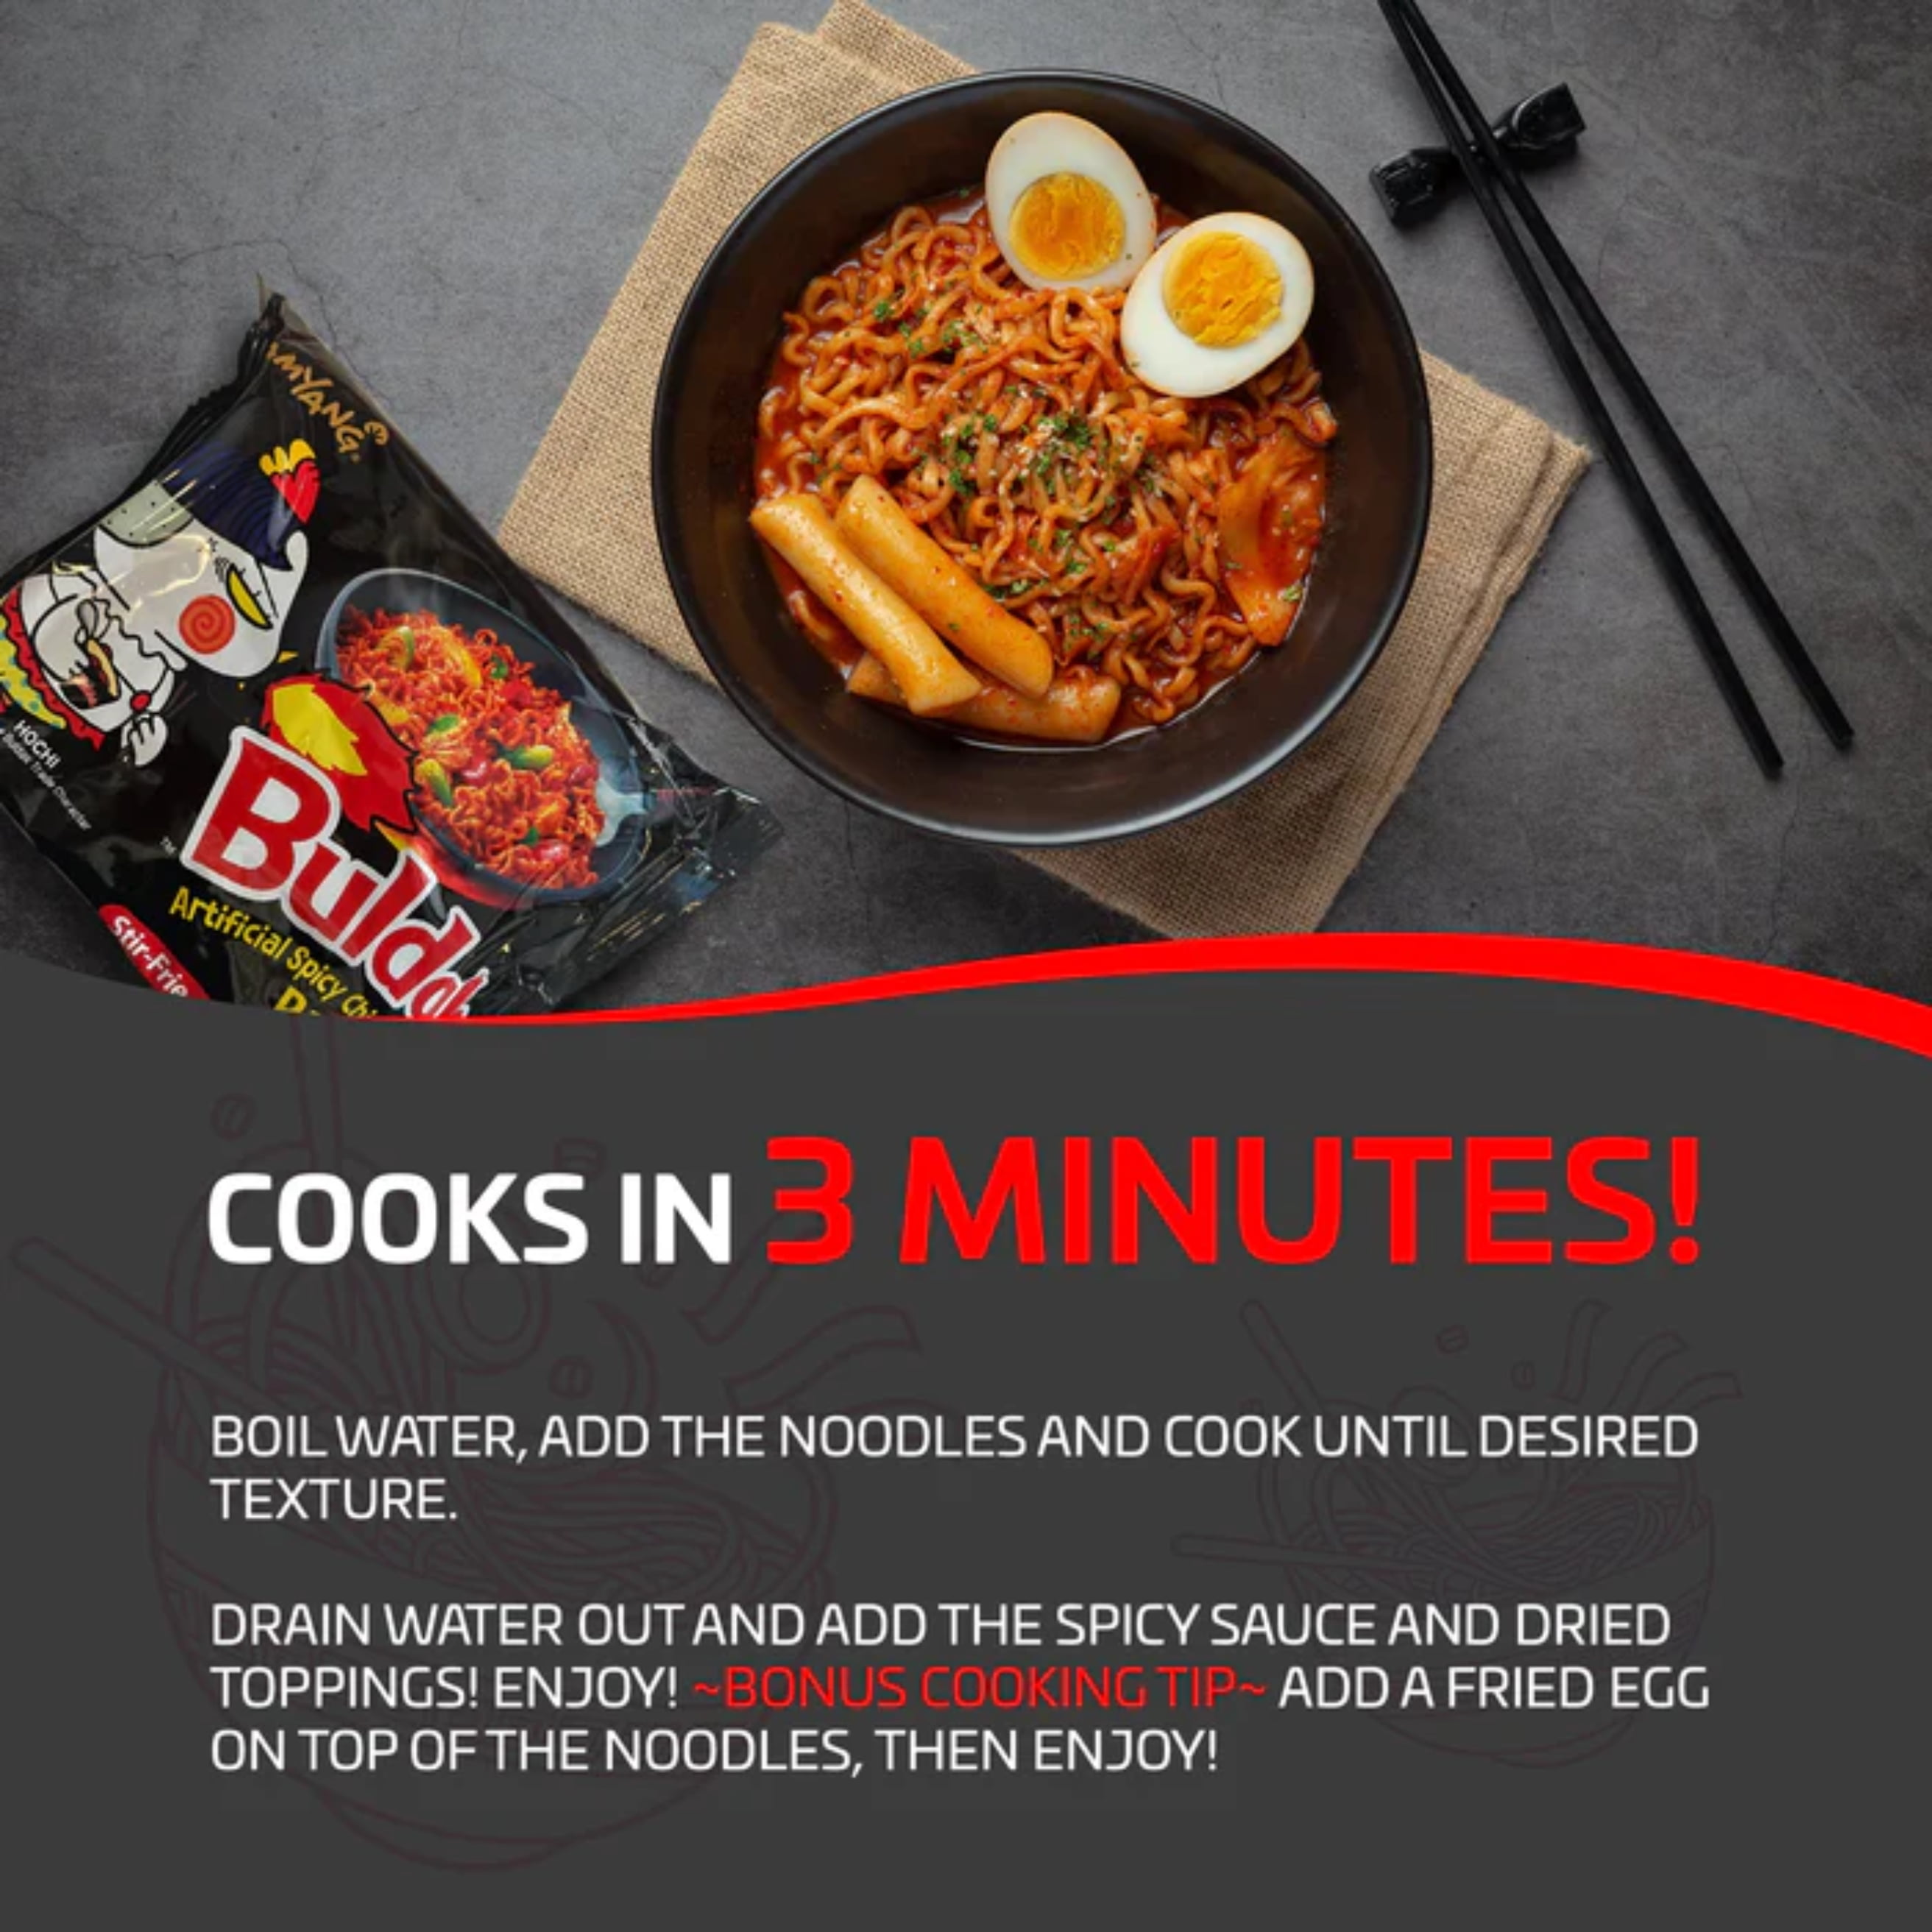 Samyang Hot Chicken Ramen Noodles 40 Packs - Buldak, 40 Packs - Smith's  Food and Drug